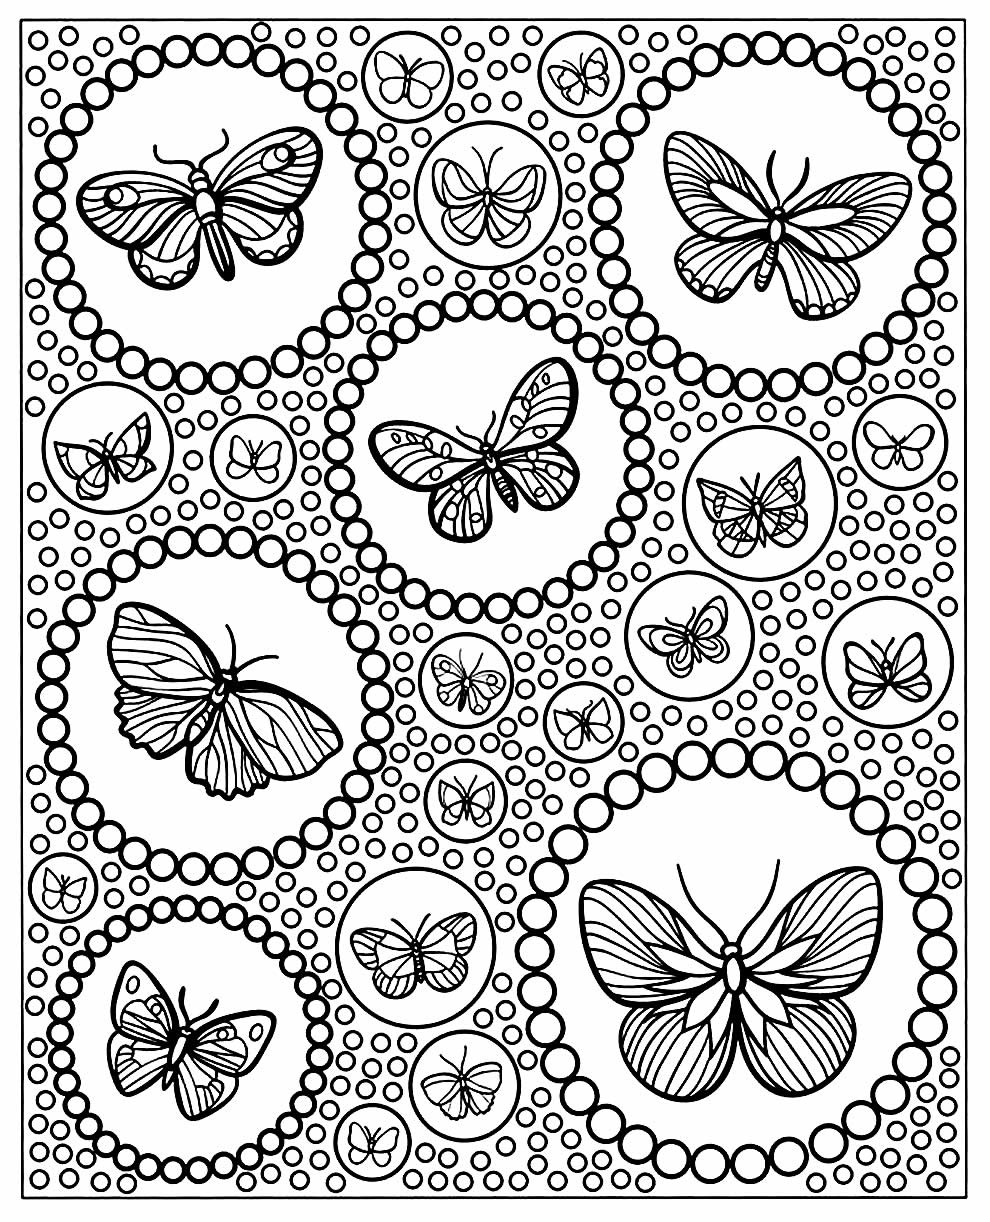 Molde de borboleta para pintar